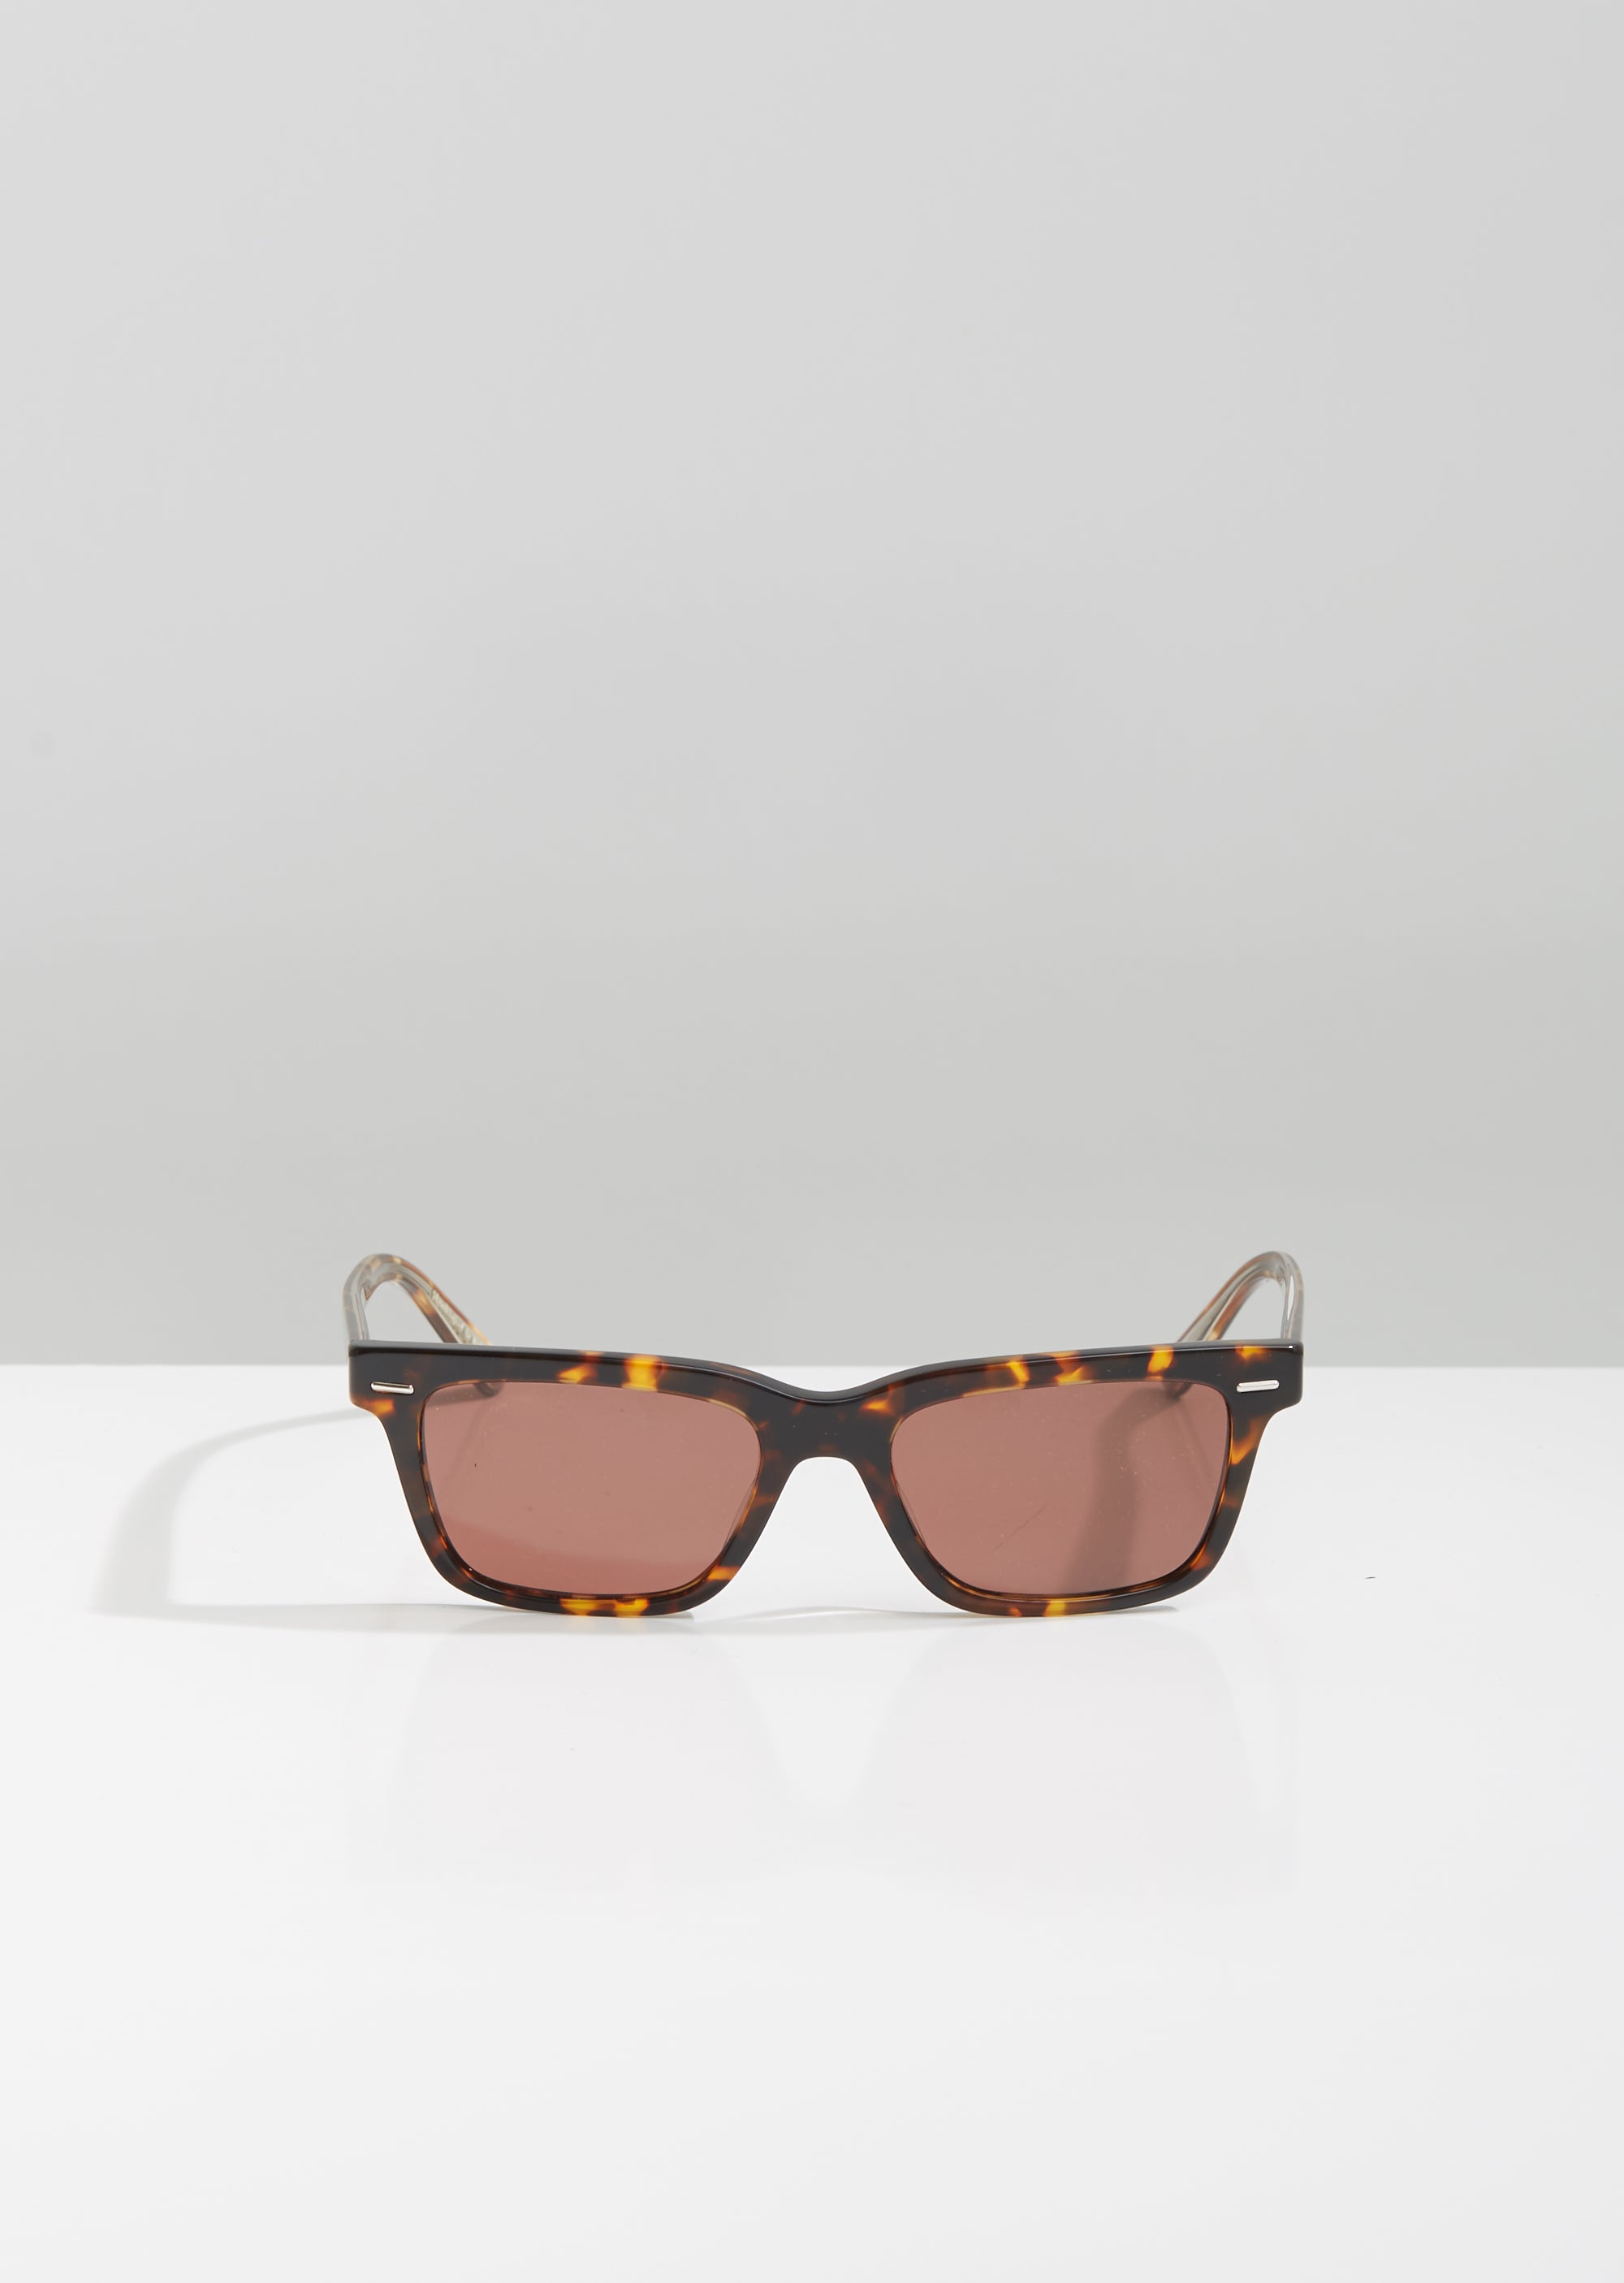 Bacc Sunglasses by Oliver Peoples The Row- La Garçonne